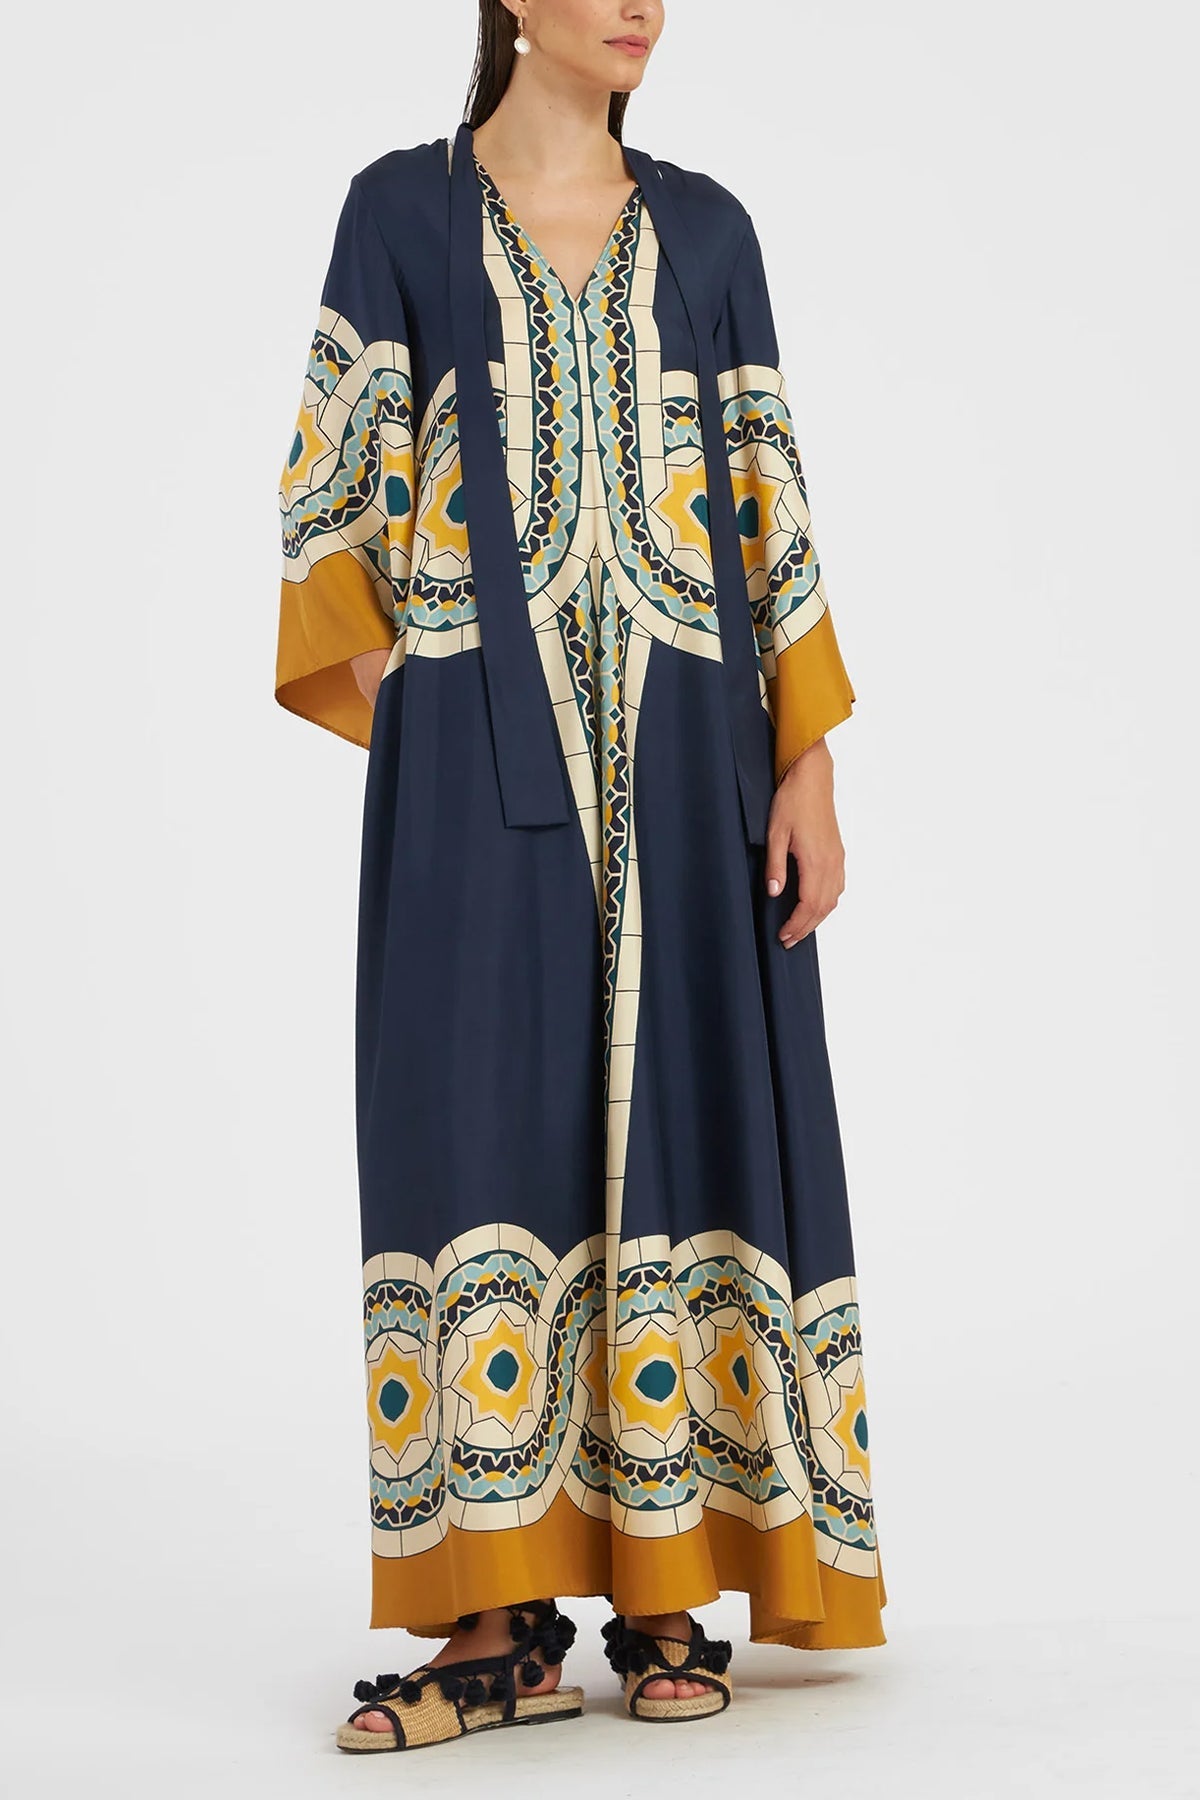 Magnifico Dress in Mudejar Placée Blue - shop-olivia.com